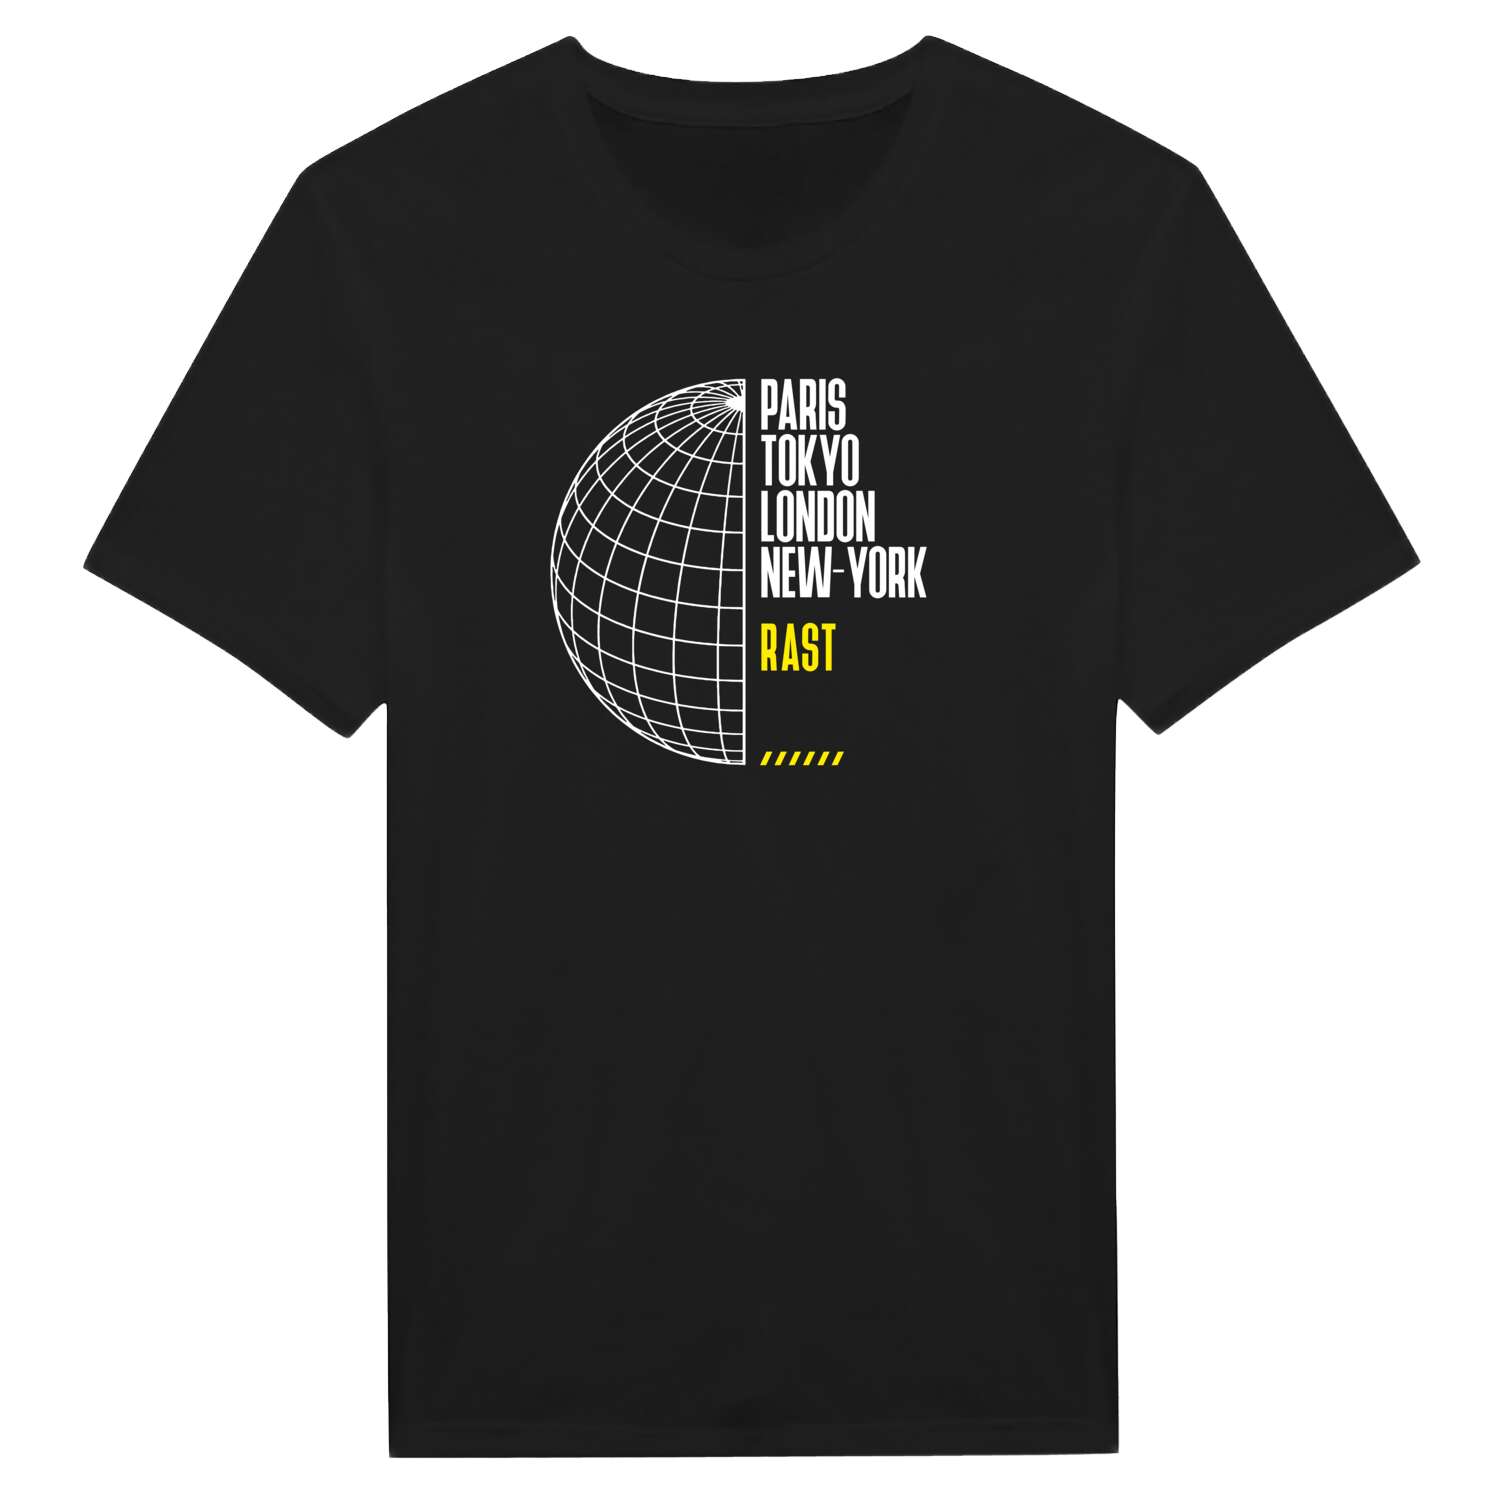 Rast T-Shirt »Paris Tokyo London«